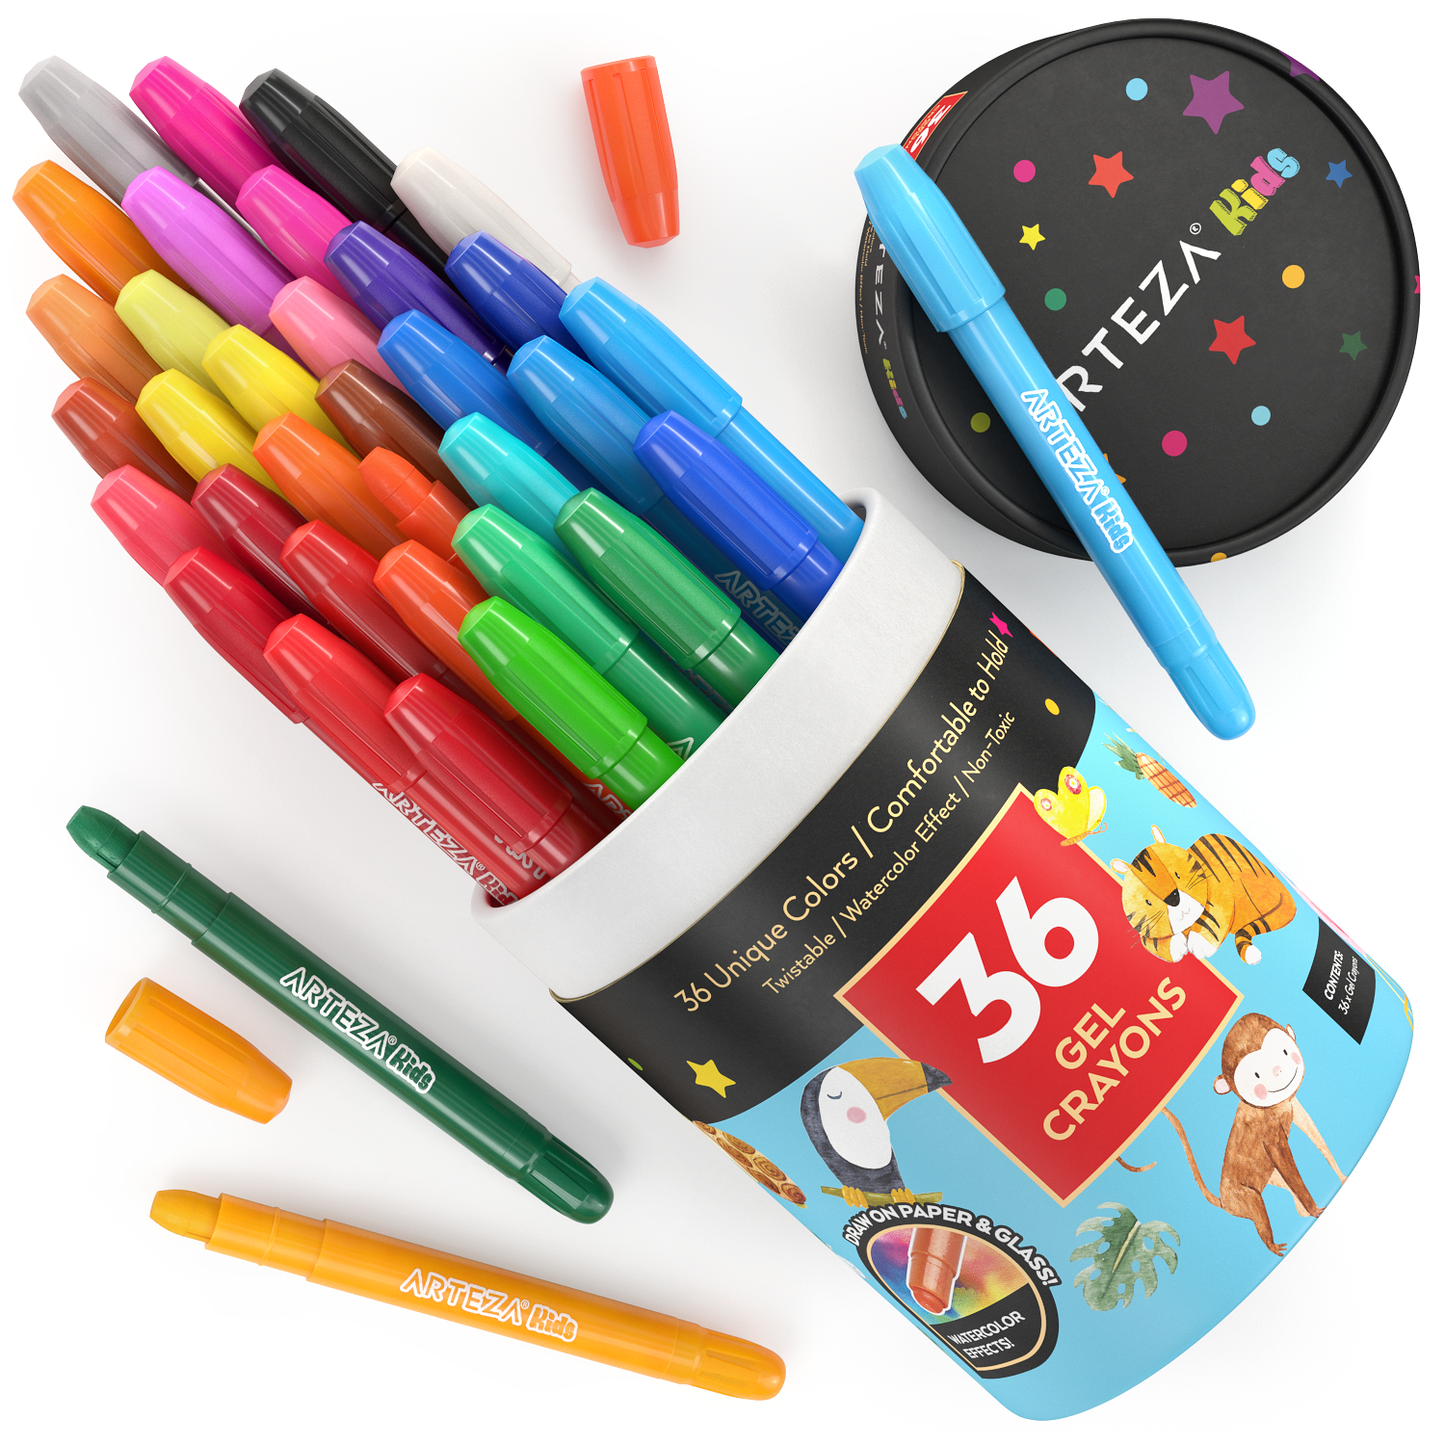 https://arteza.com/cdn/shop/products/kids-gel-crayons-set-of-36_oqo9Cc6k.png?v=1652894556&width=1445